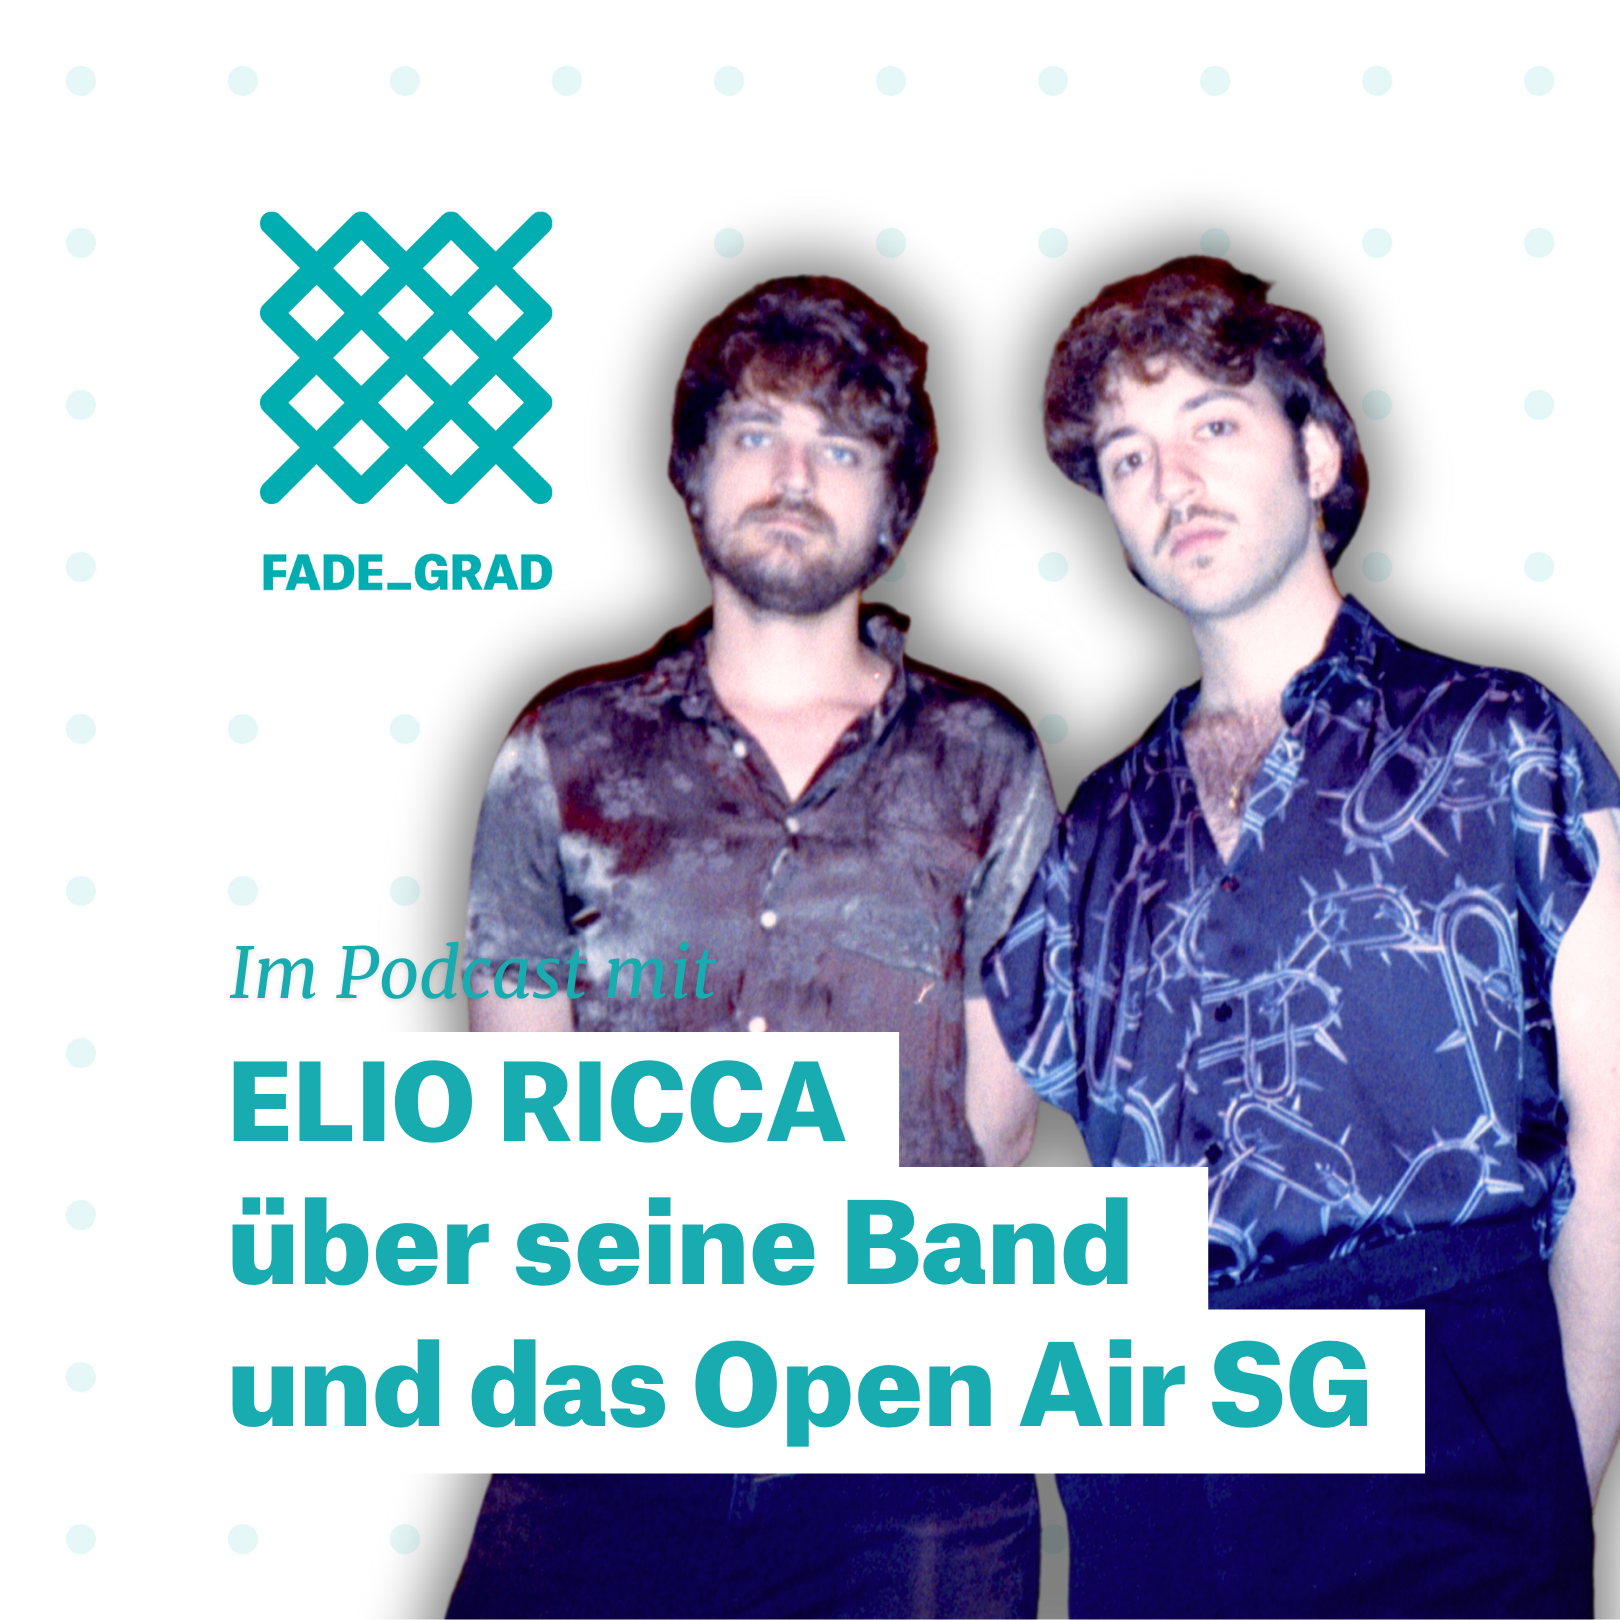 Elio Ricca spielen am Open Air St.Gallen.